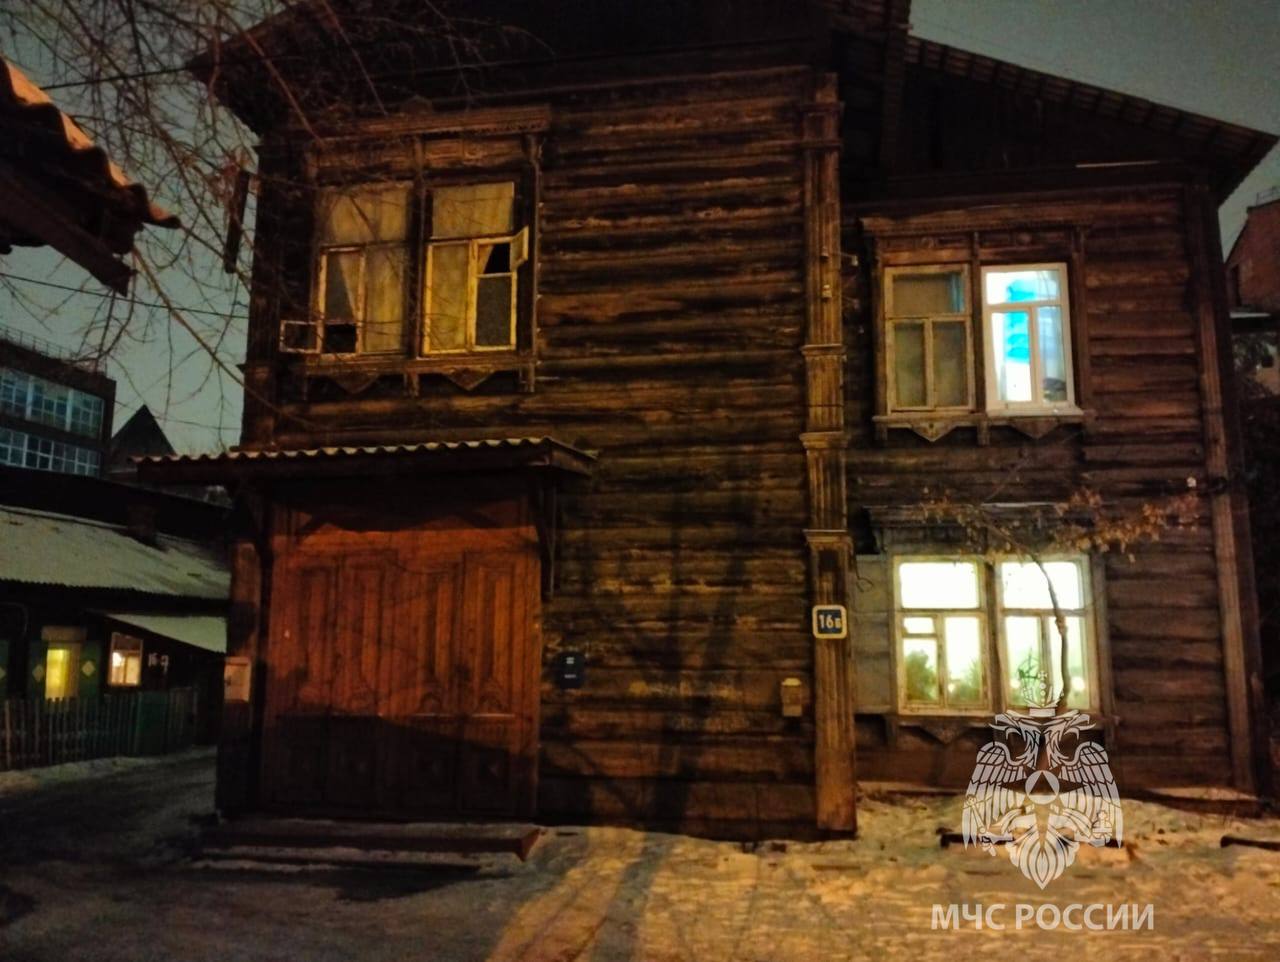 Пожар произошел в старинном деревянном доме на улице Грязнова в Иркутске